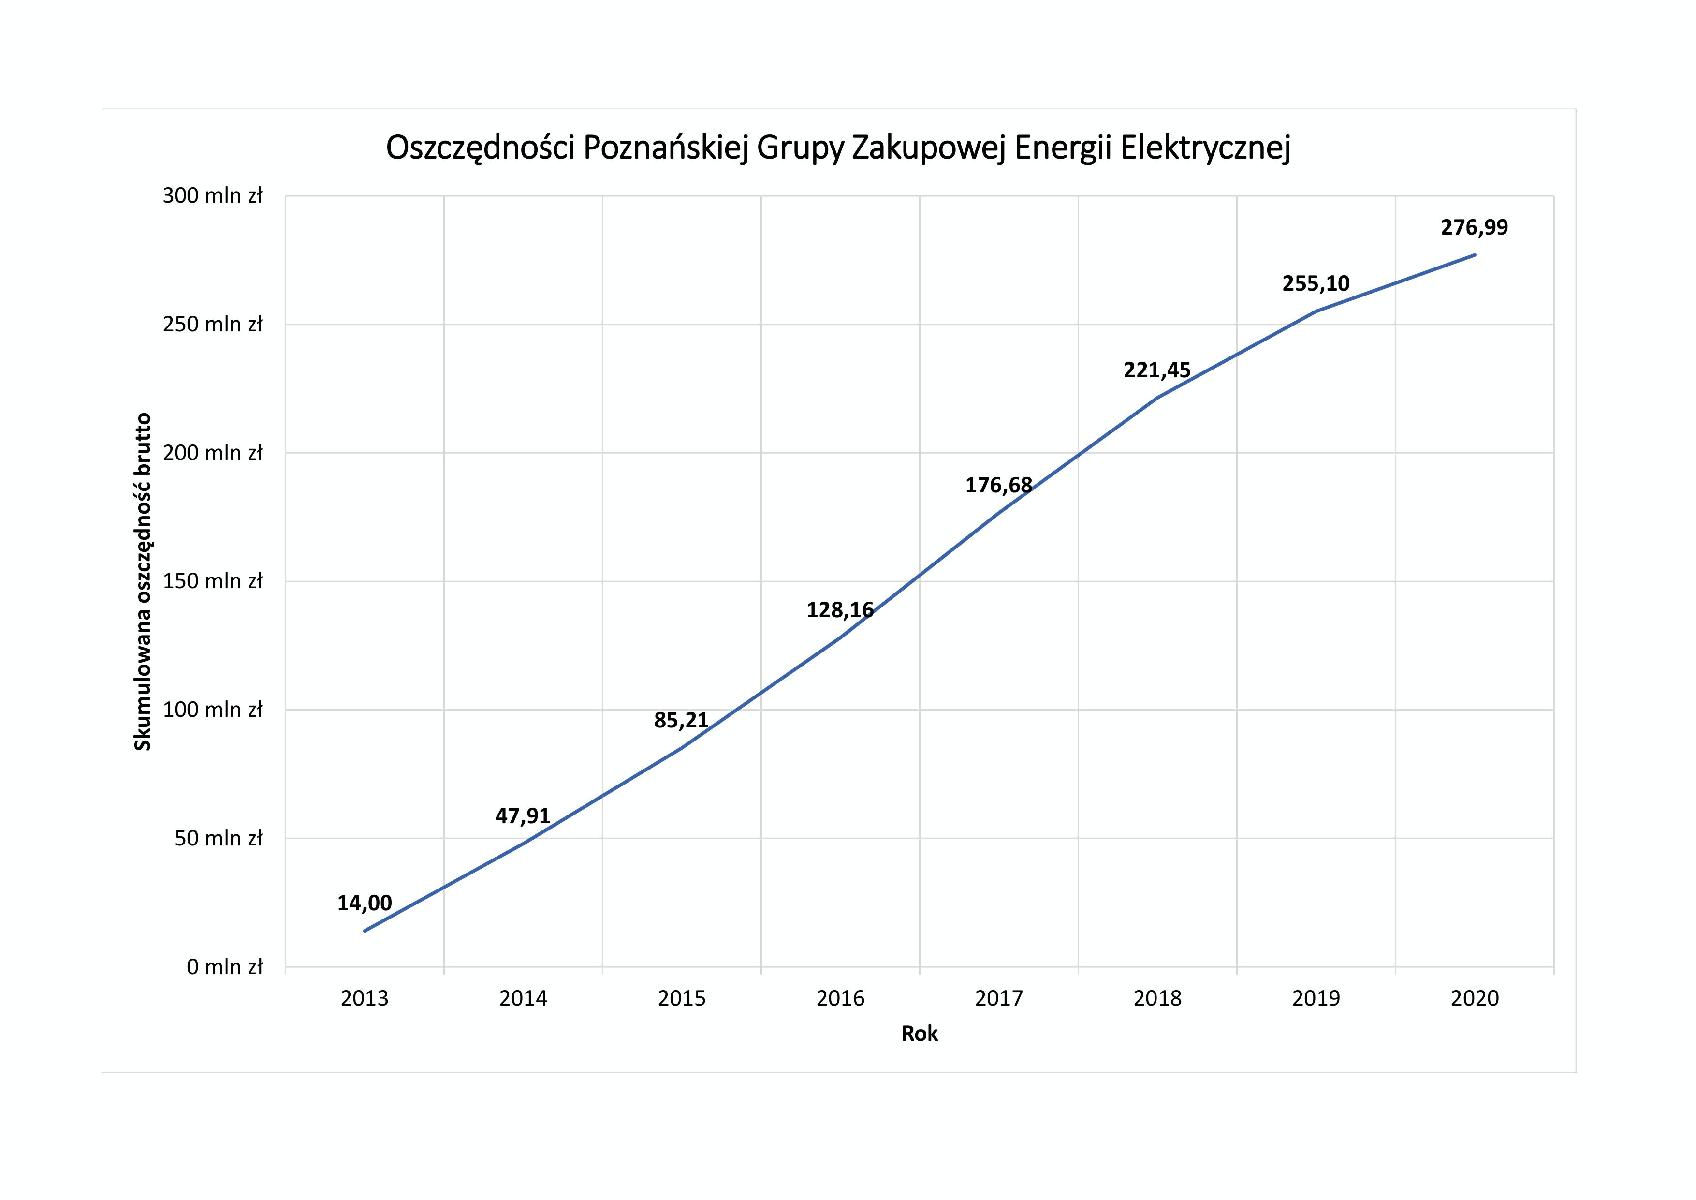 Oszczędności Poznańskiej Grupy Zakupowej Energii Elektrycznej